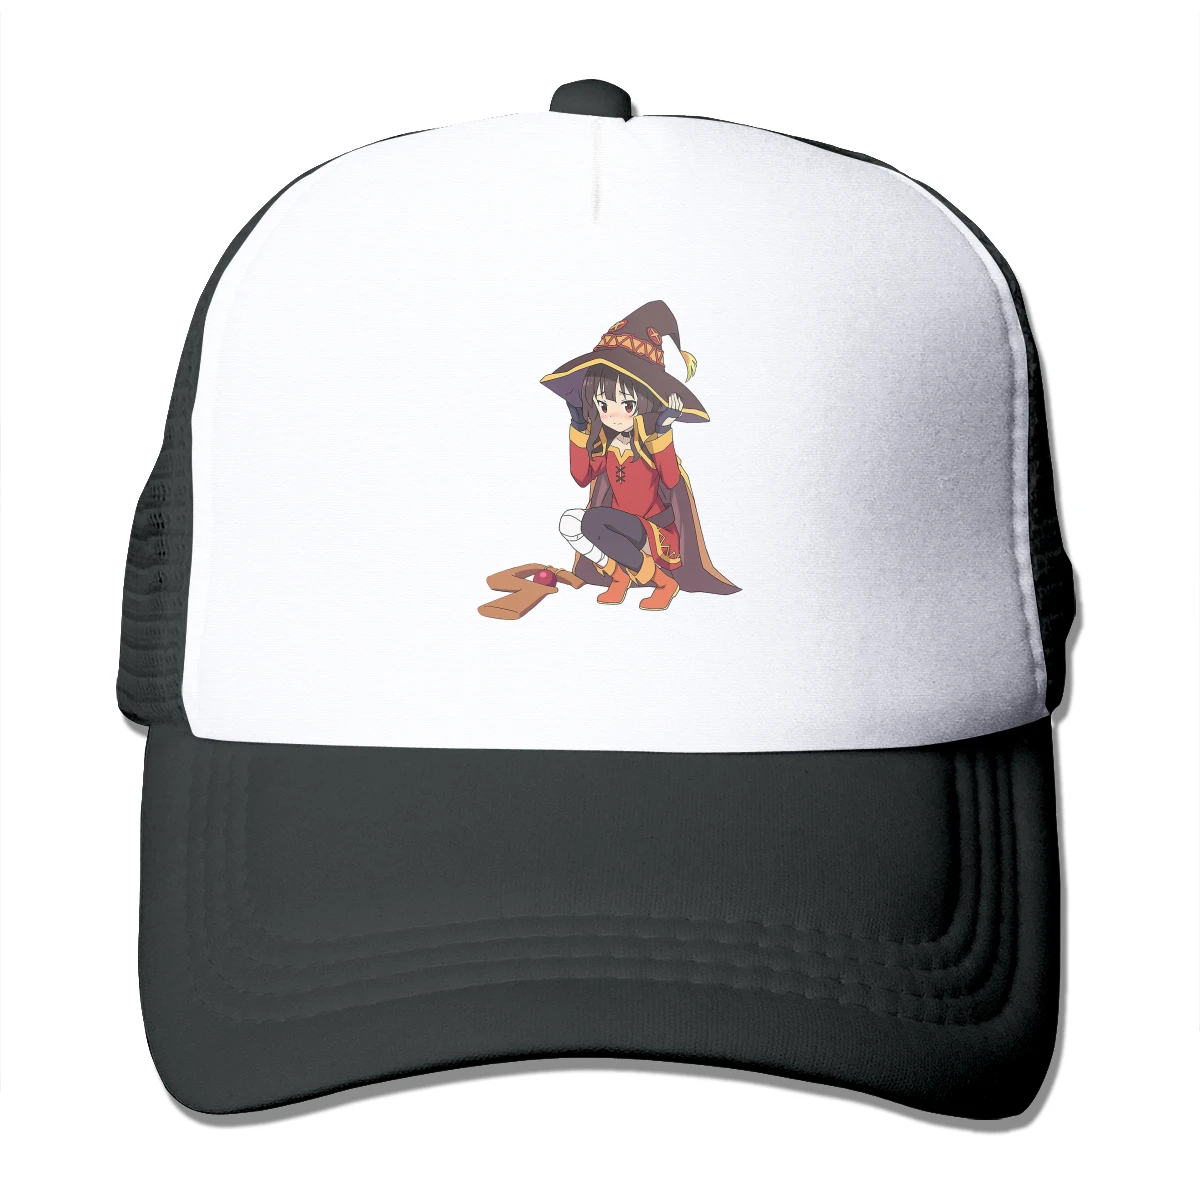 

Фиксирующая шапка, шляпы, благословение Бога на этот замечательный мир, саттоу, казума, комедия, новая сетчатая бейсболка, бейсболка в стиле ...